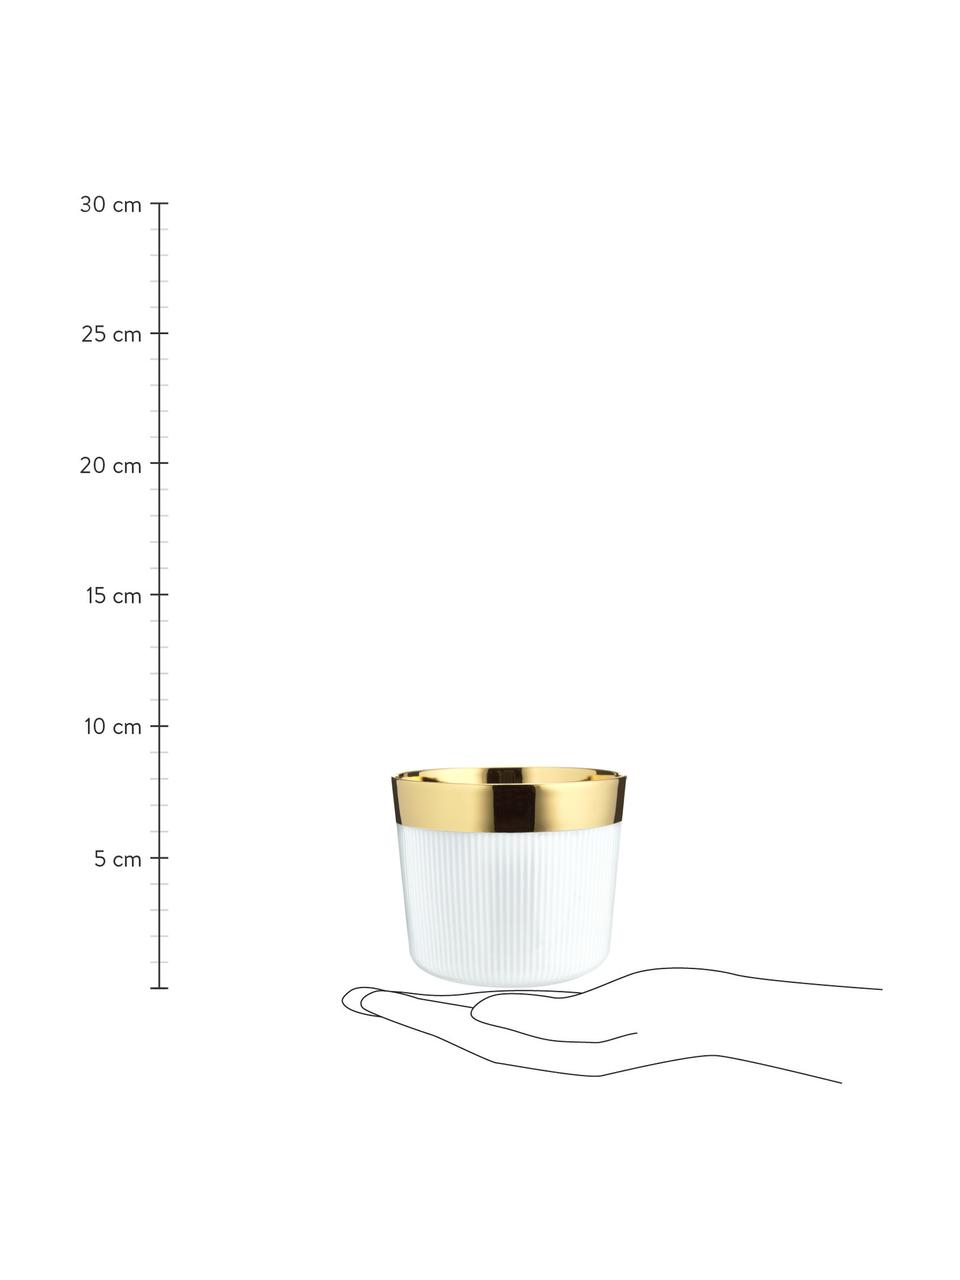 Tazza champagne placcata oro con linee in rilievo in porcellana Sip of Gold, Bordo: porcellana placcata in or, Bianco, dorato, Ø 9 x Alt. 7 cm, 300 ml